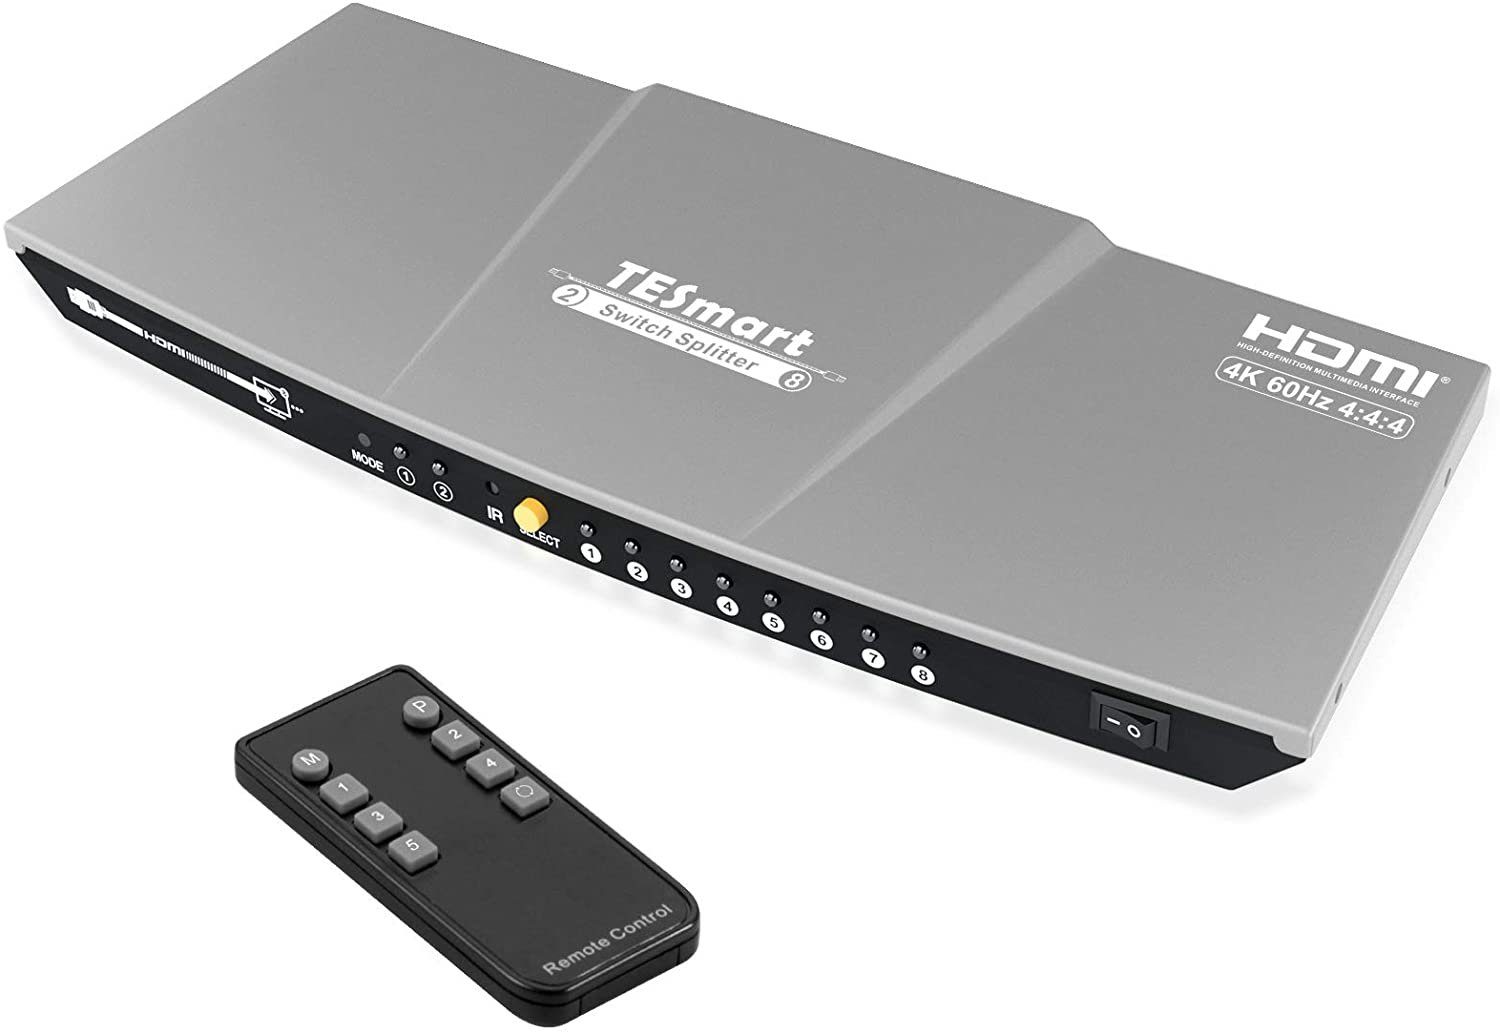 TESmart »2×8 HDMI Splitter Switch 2 in 8 Out HDMI-Switch Unterstützung  4K@60Hz HDR 10 HDCP 2.2 mit IR-Fernbedienung, Auto Switch, EDID Management  HSW0208A1U« Computer-Adapter online kaufen | OTTO